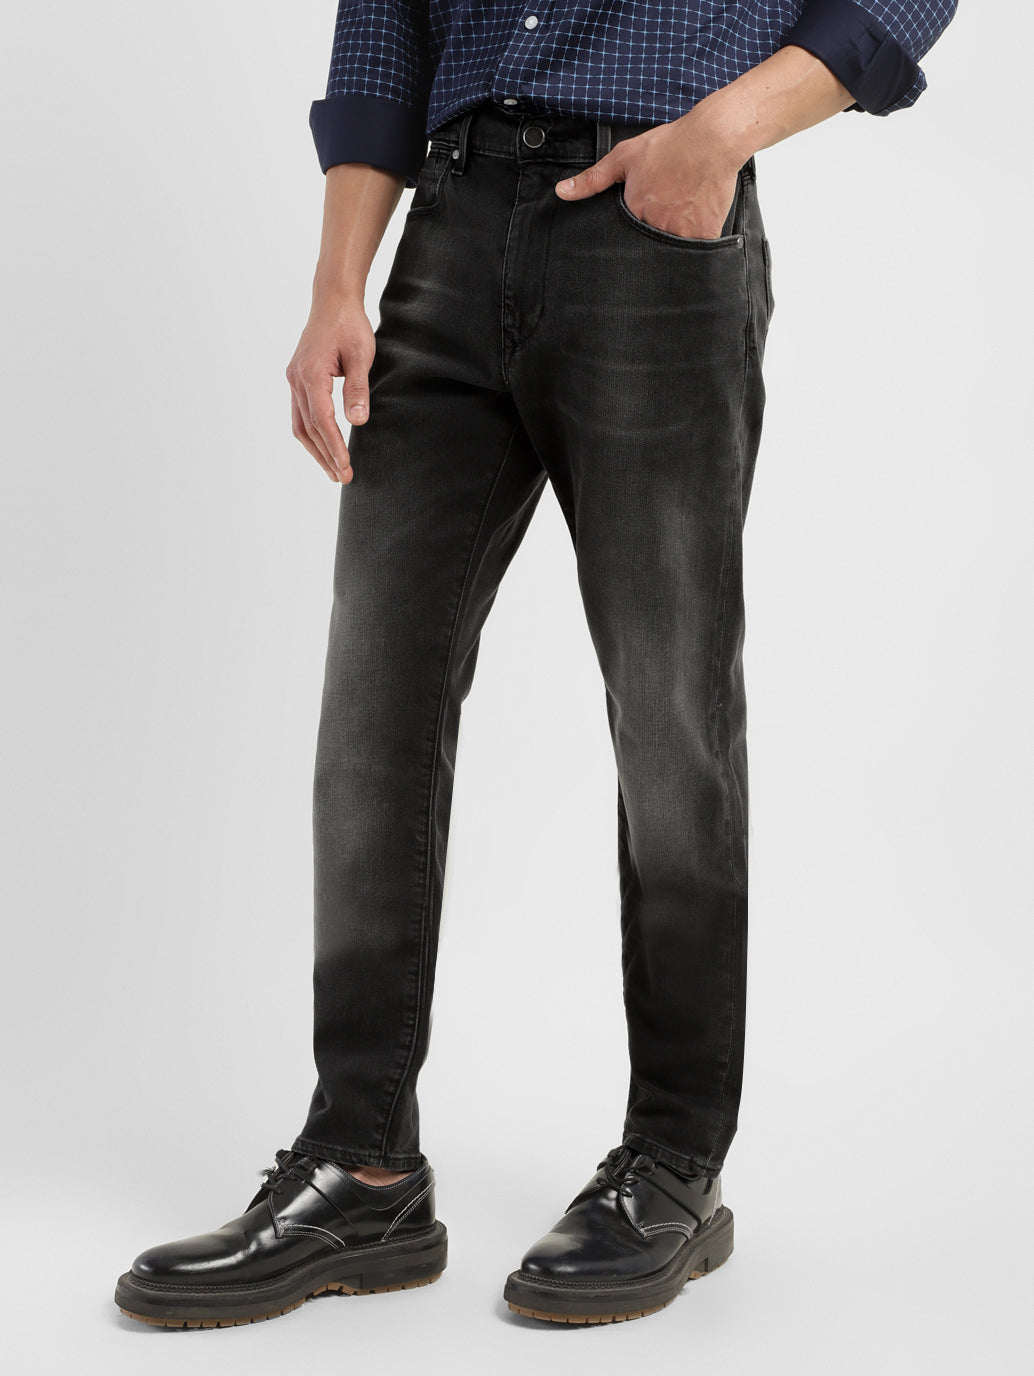 SUNSIOM Mens Long Sleeve Shirt Button Up Denim Jeans Smart Formal Plain Top  - Walmart.com